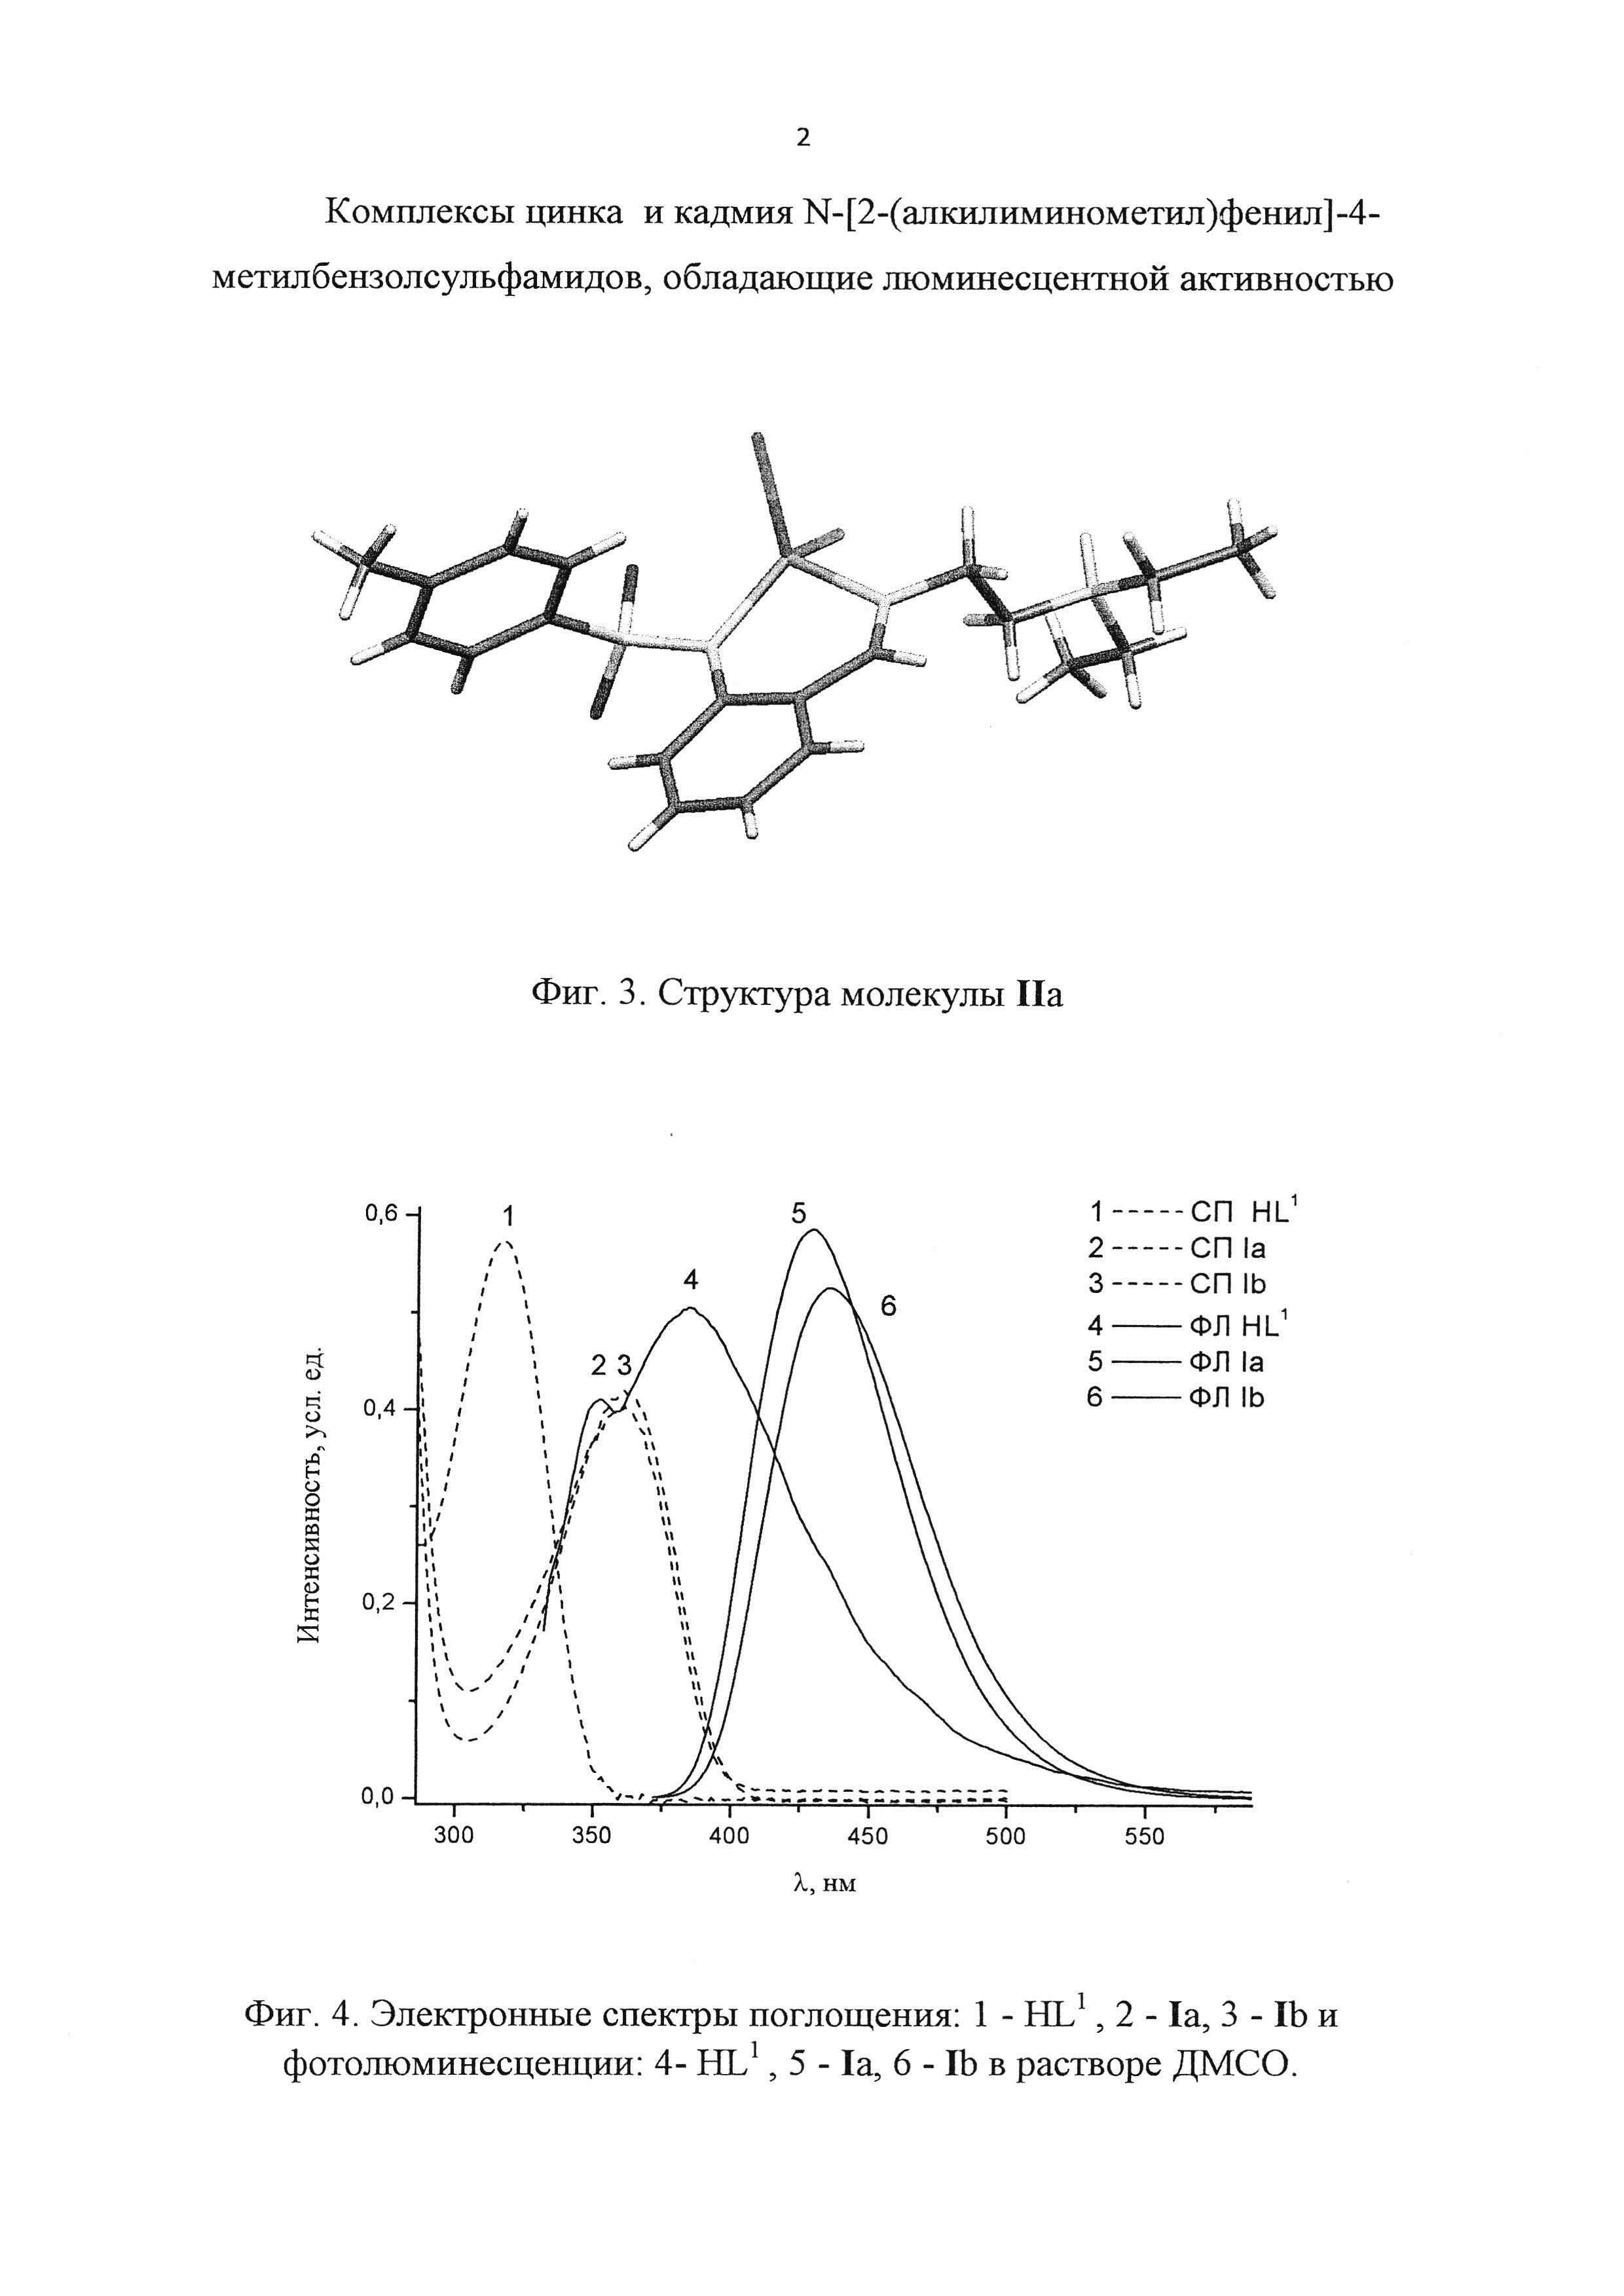 Комплексы цинка и кадмия N-[2-(алкилиминометил)фенил]-4-метилбензолсульфамидов, обладающие люминесцентной активностью